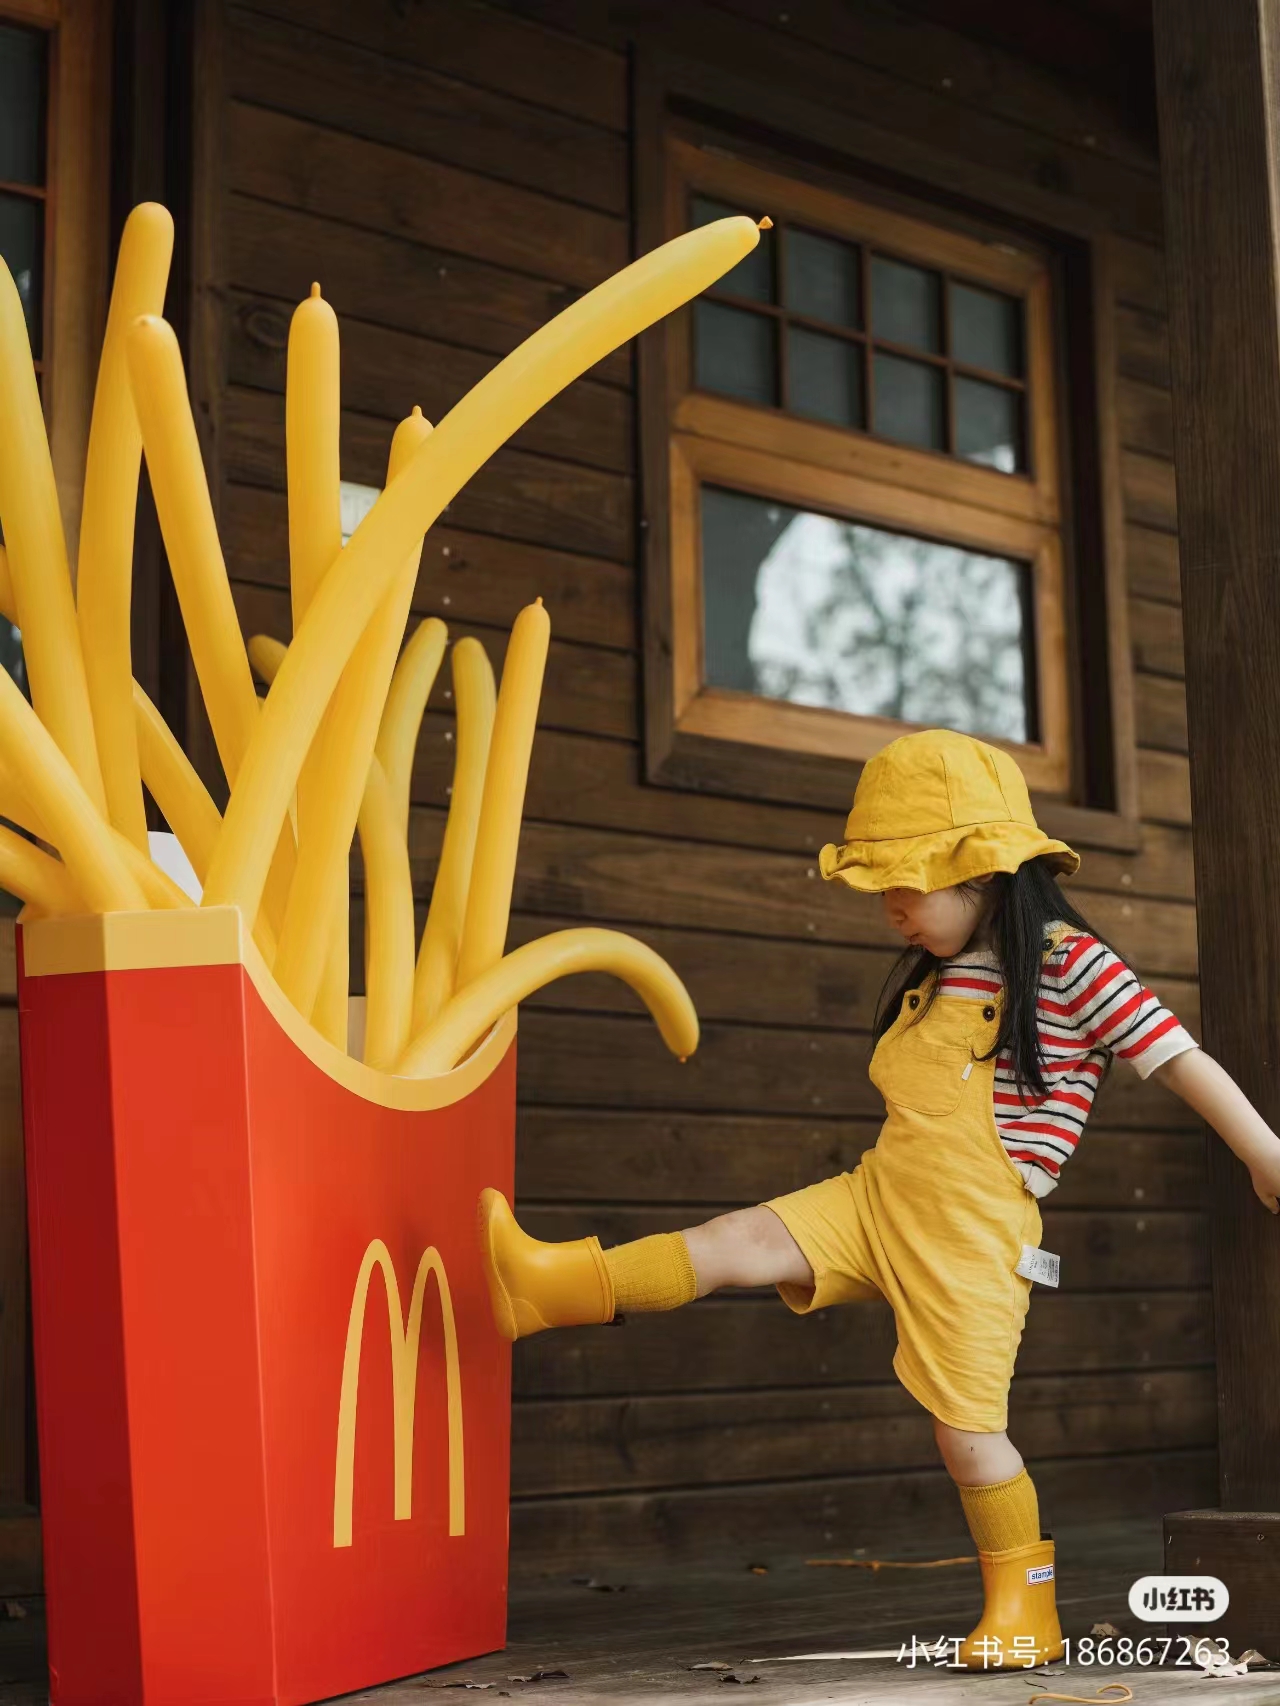 小红书同款巨型薯条盒子麦当劳气球户外活动生日儿童拍照道具定制